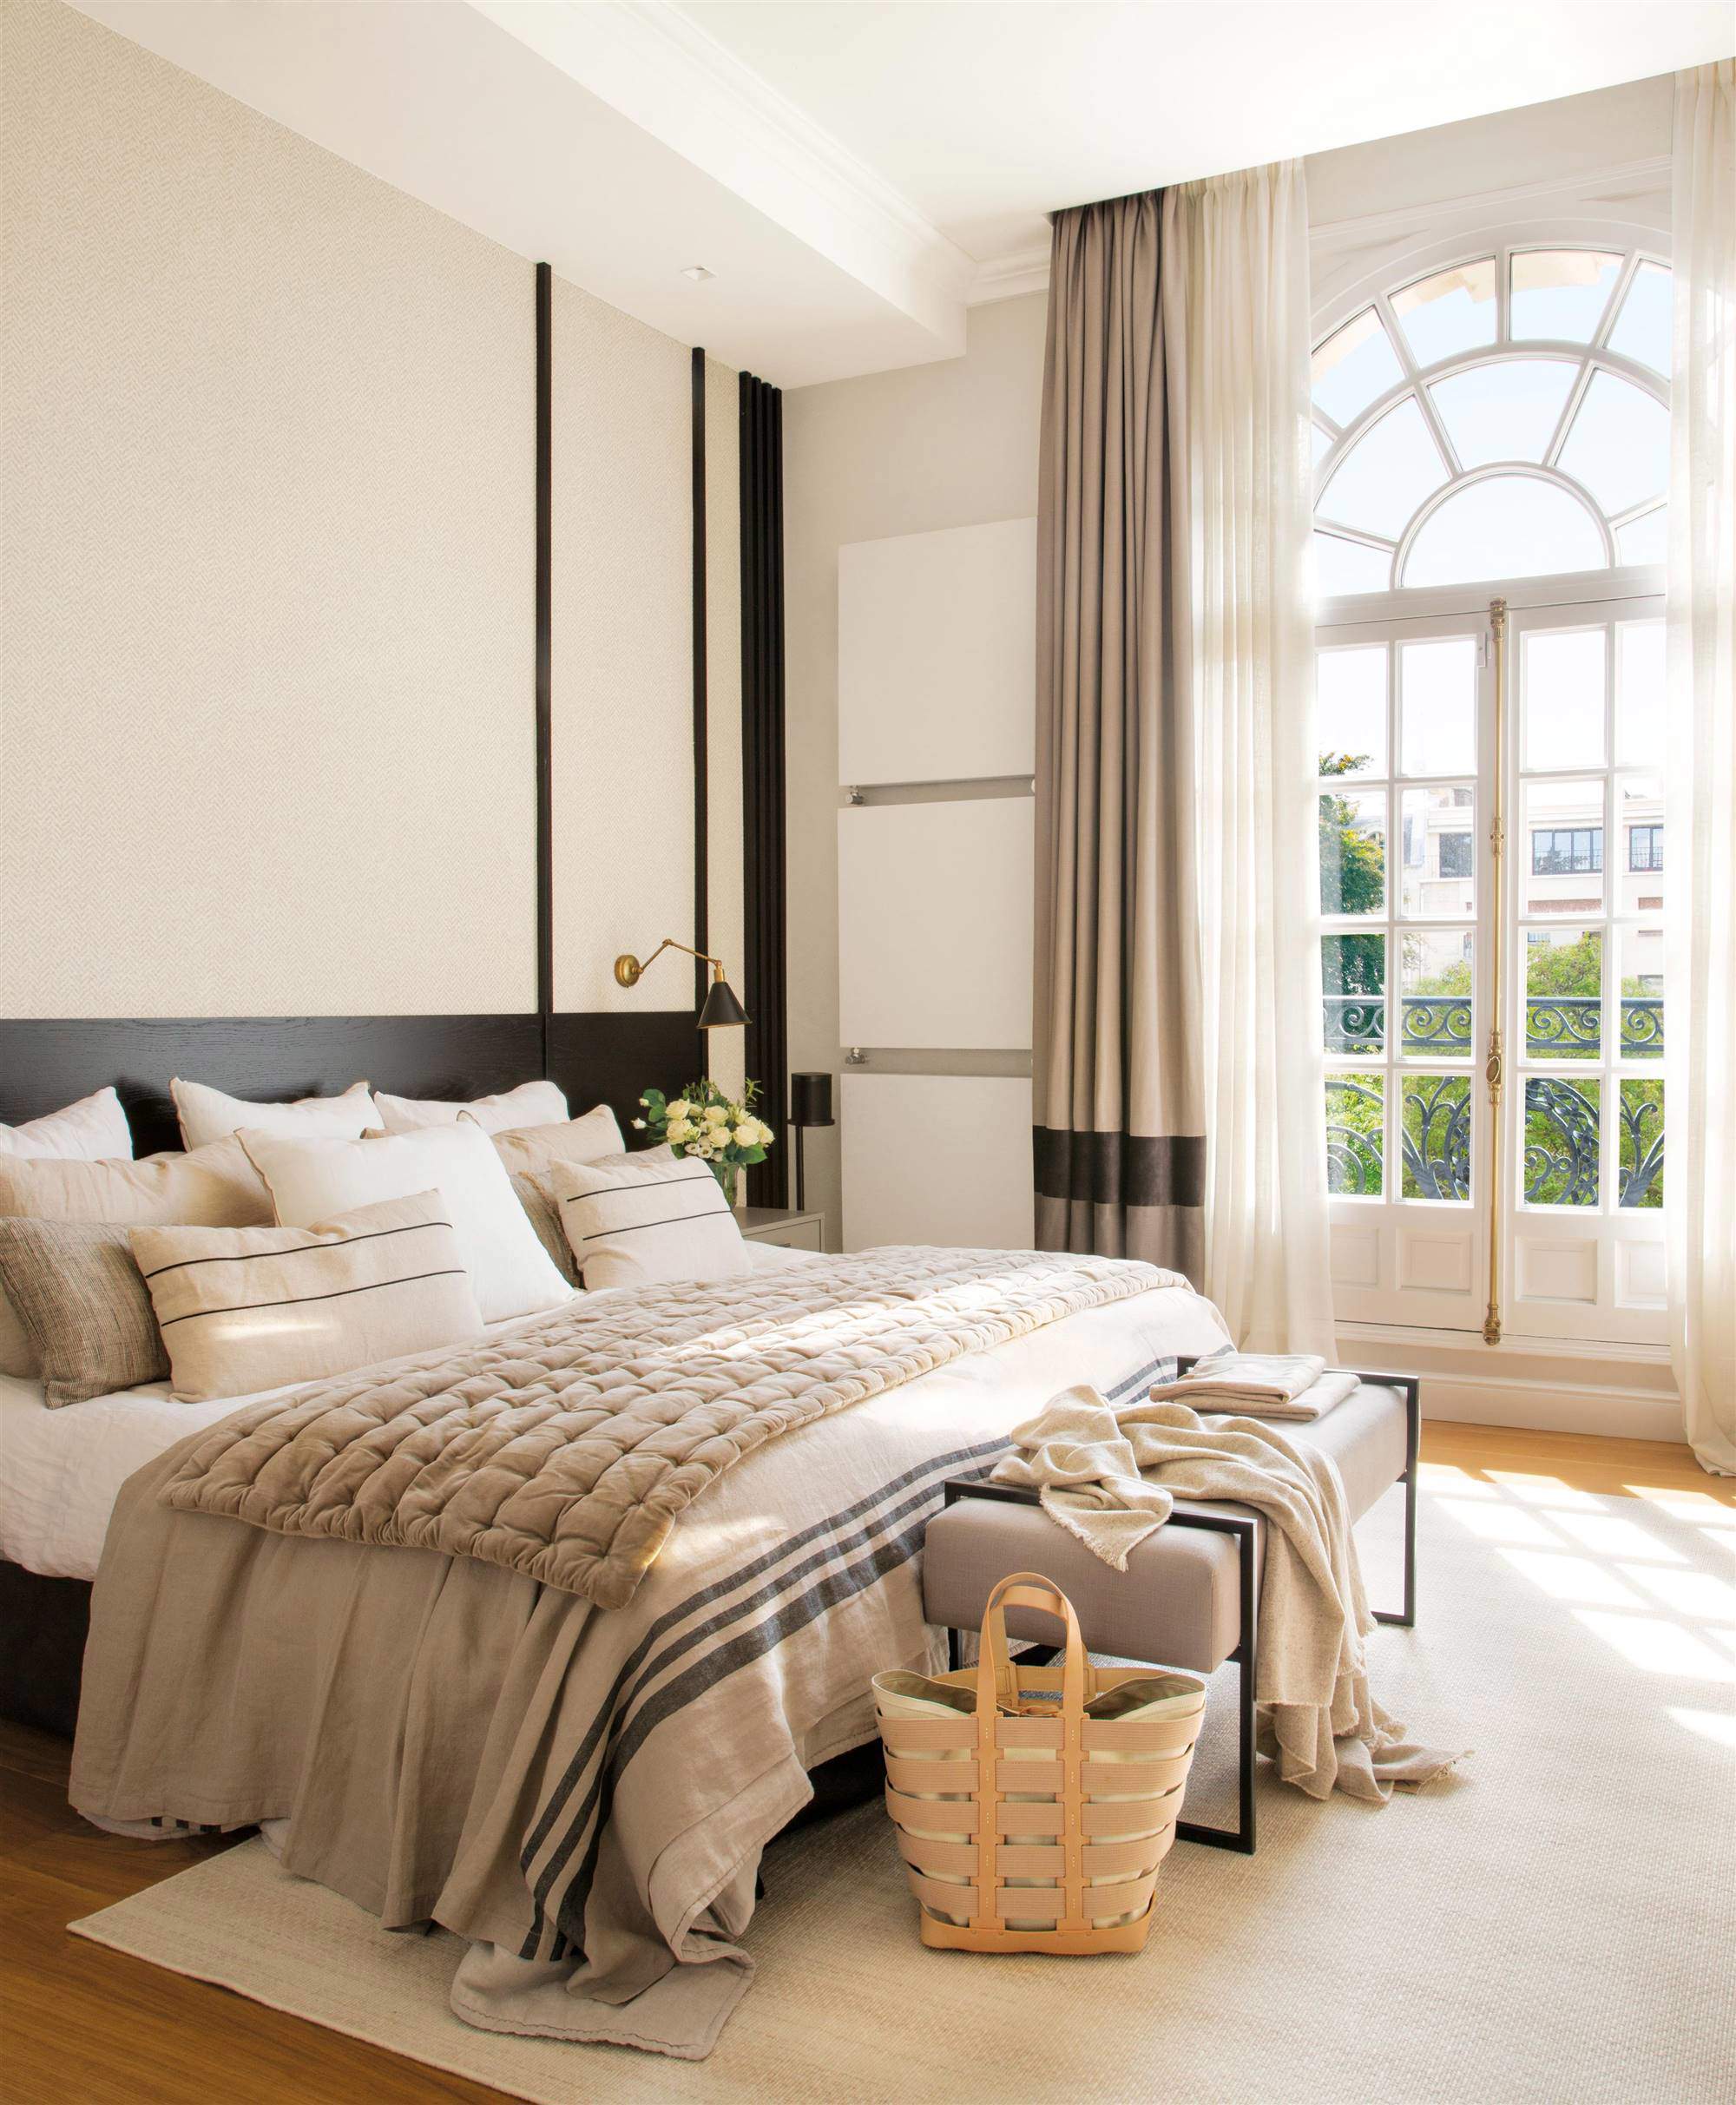 Dormitorio decorado blanco, piedra y negro con grandes ventanales. 00531707